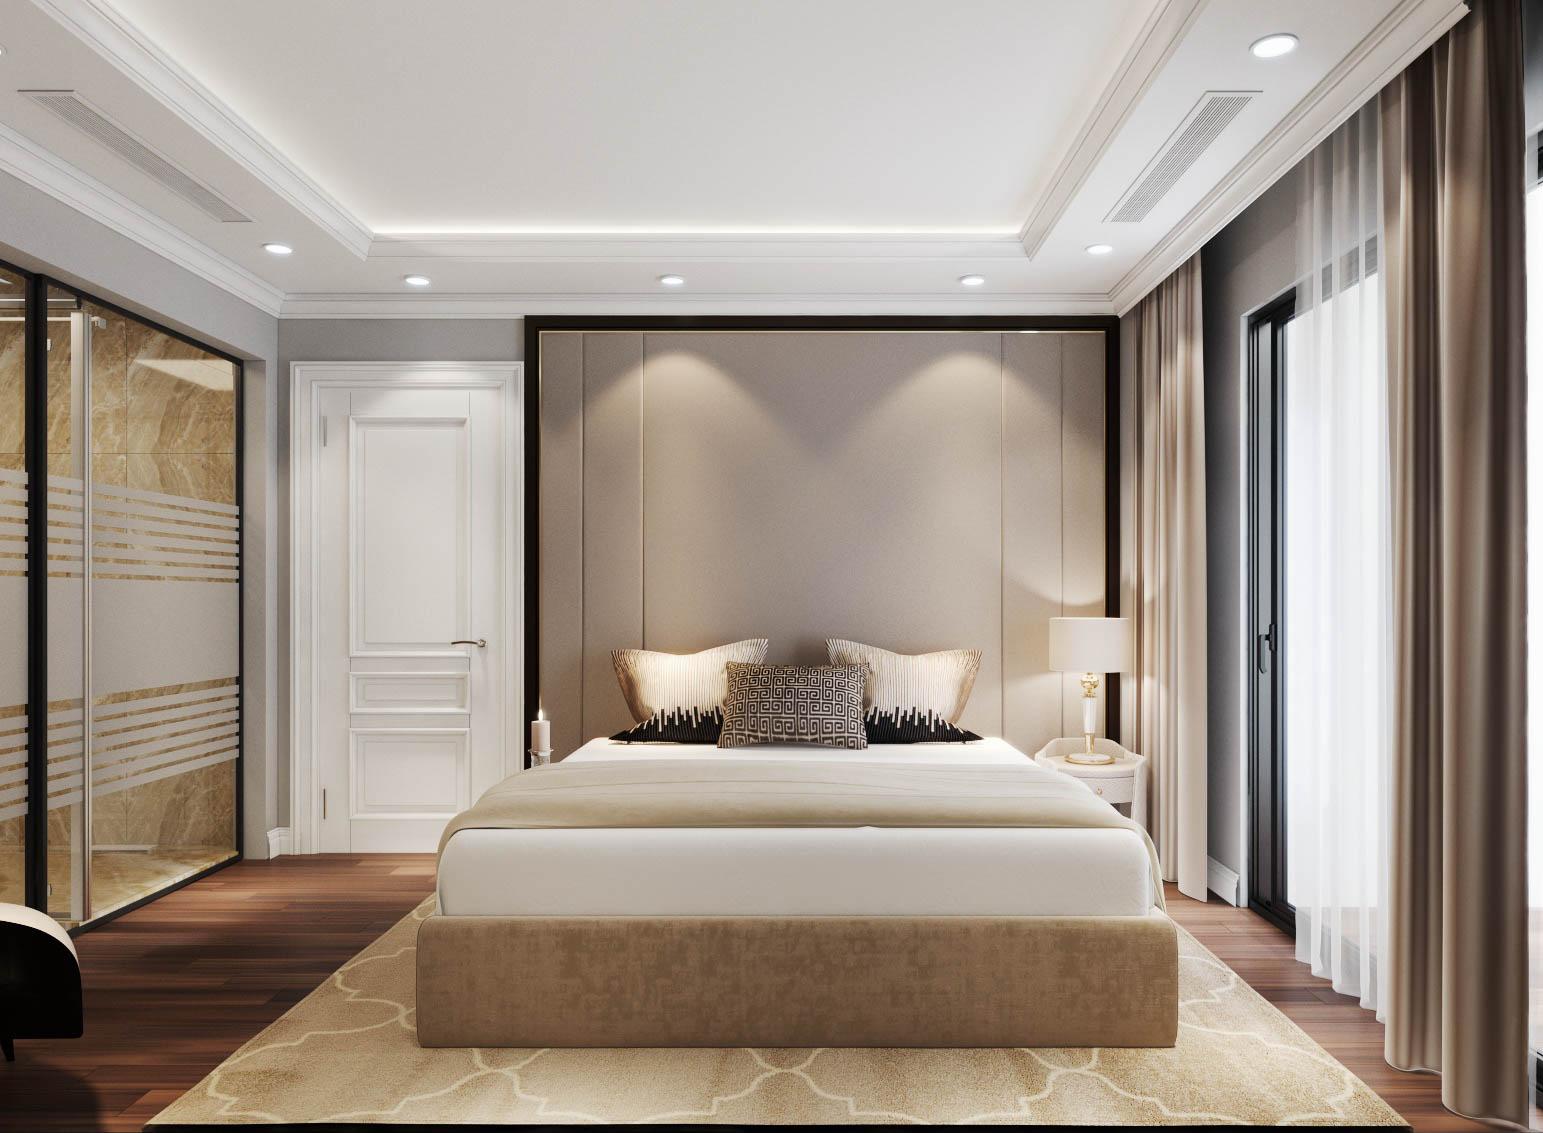 Phòng ngủ master của vợ chồng gia chủ được thiết kế với diện tích rộng rãi, bài trí nội thất tối giản và đầy đủ tiện ích hiện đại.